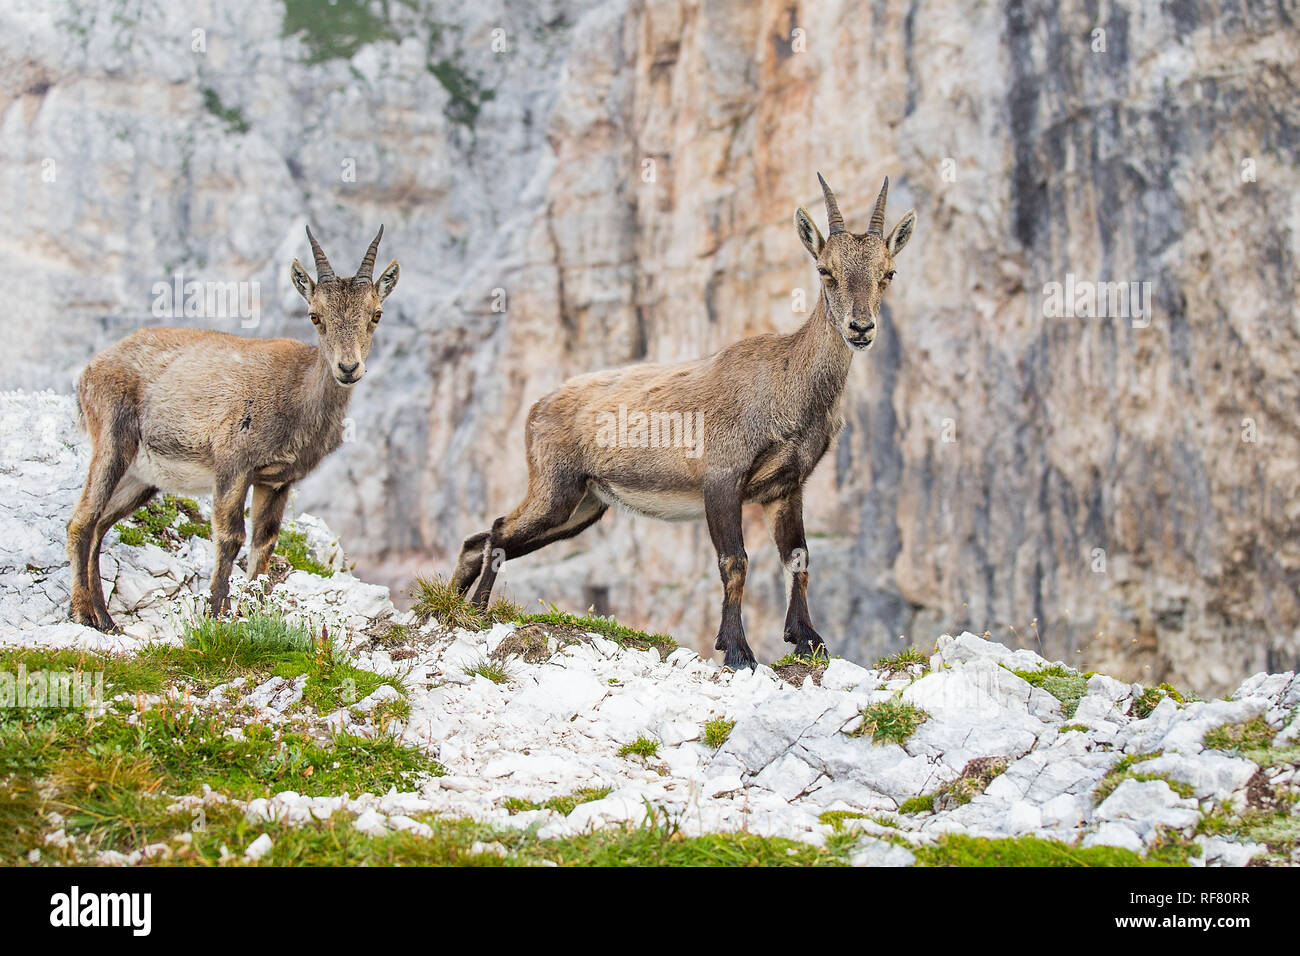 Two young Alpine ibex (Capra ibex) Stock Photo